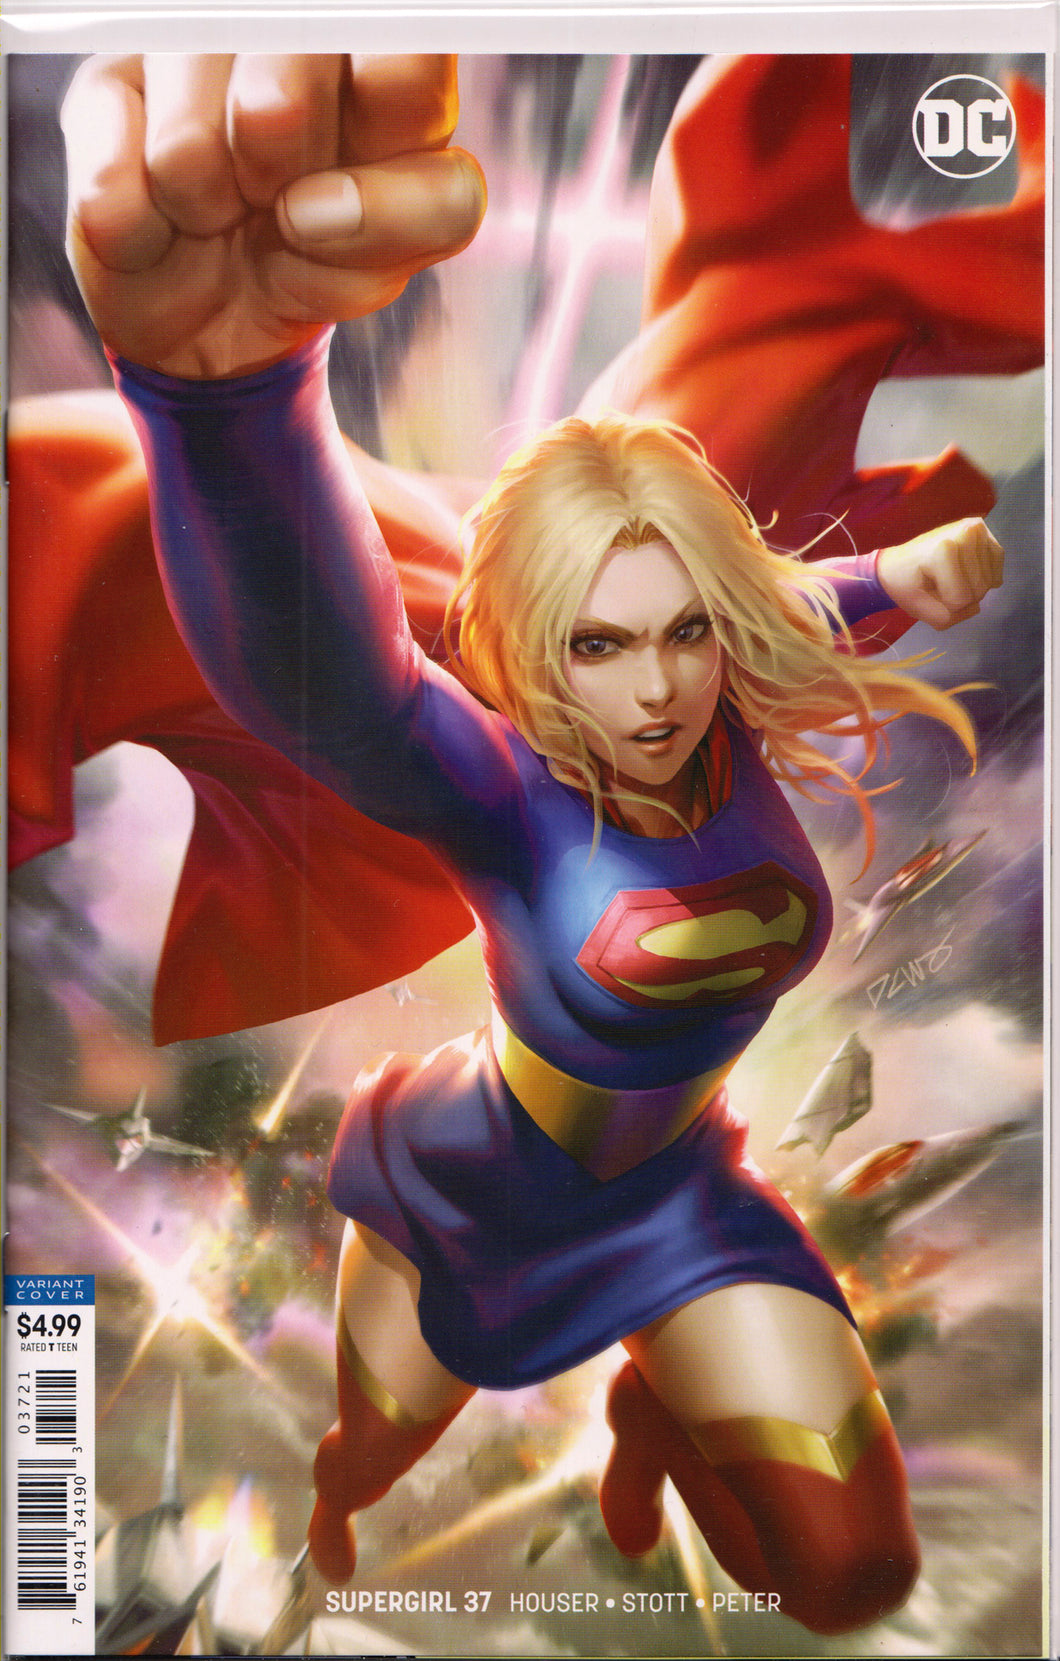 SUPERGIRL #37 (DERRICK CHEW VARIANT) COMIC BOOK ~ DC Comics ~ HOT